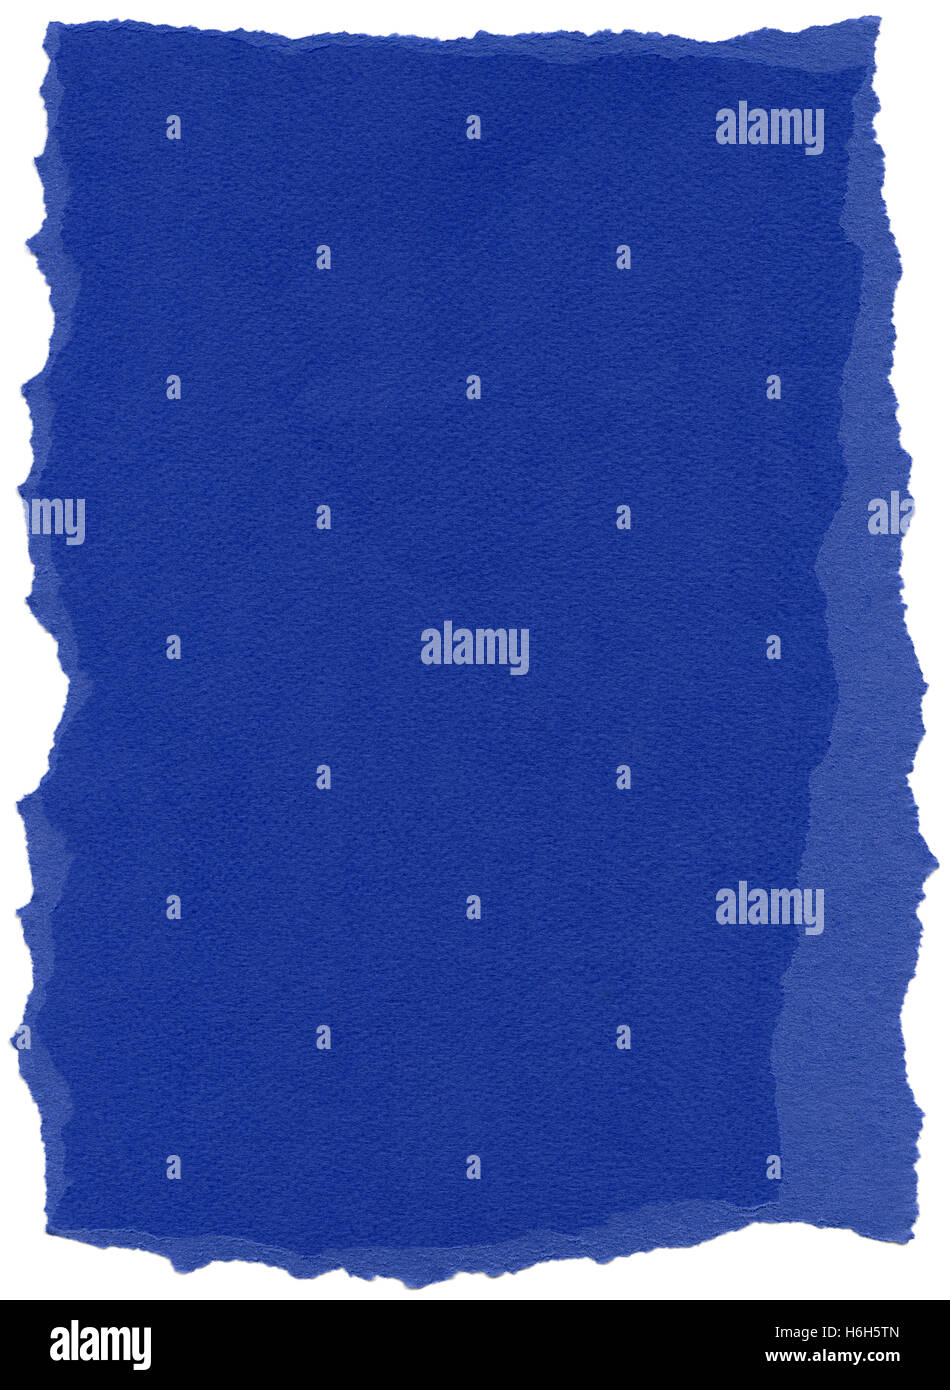 La texture du papier fibre bleu nuit avec bords déchirés. Isolé sur fond blanc. Scanné à 1200dpi à l'aide d'un scanner professionnel Banque D'Images